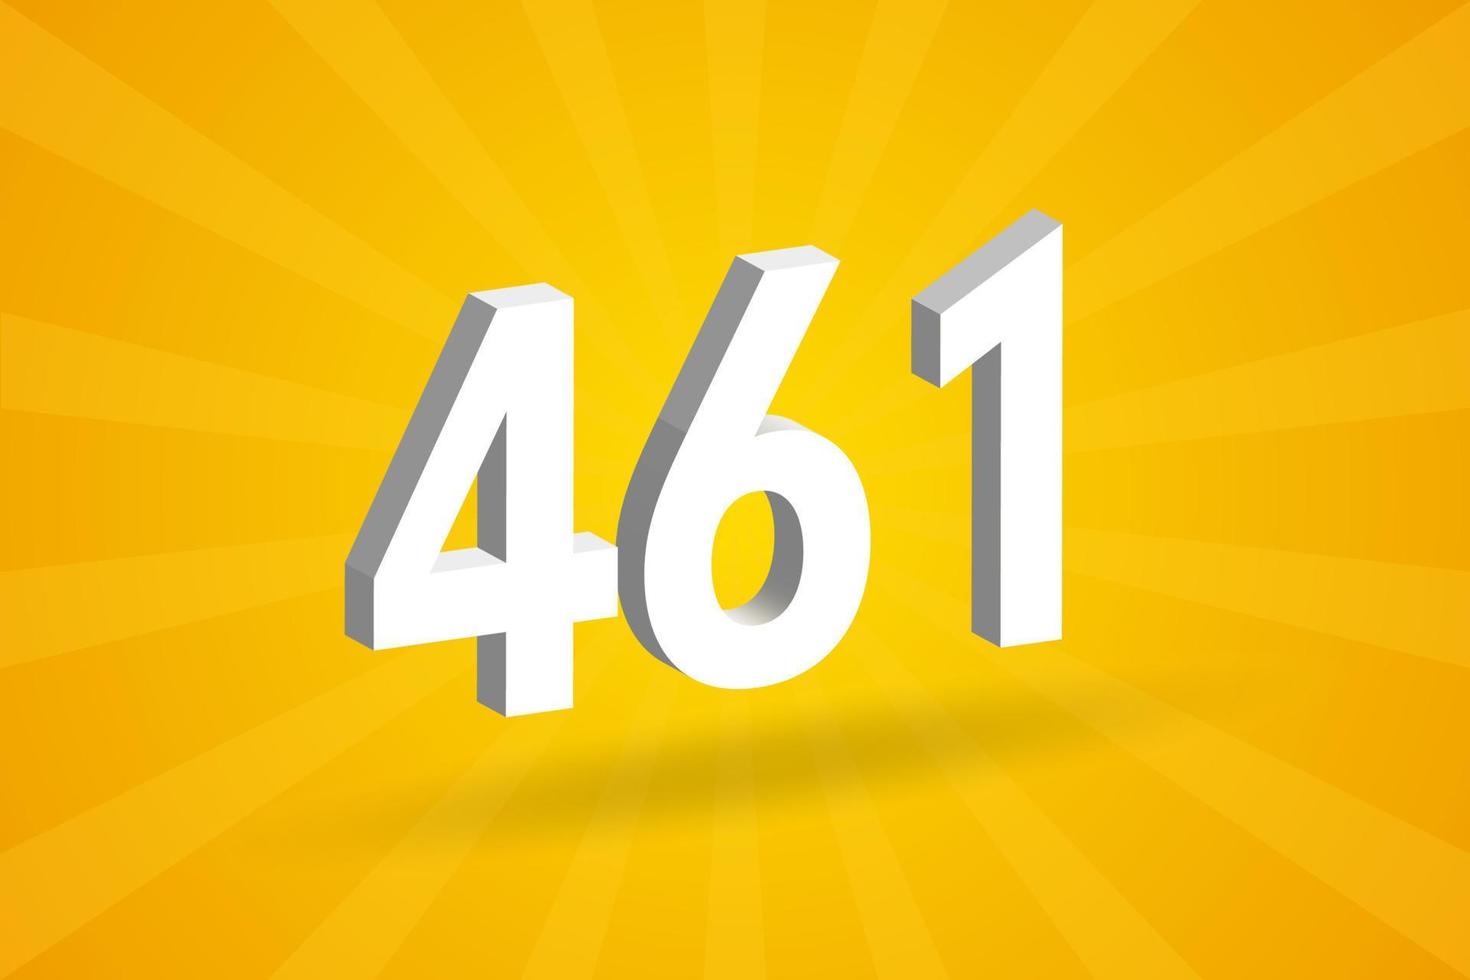 3d 461 Zahlenschriftalphabet. weiße 3D-Nummer 461 mit gelbem Hintergrund vektor